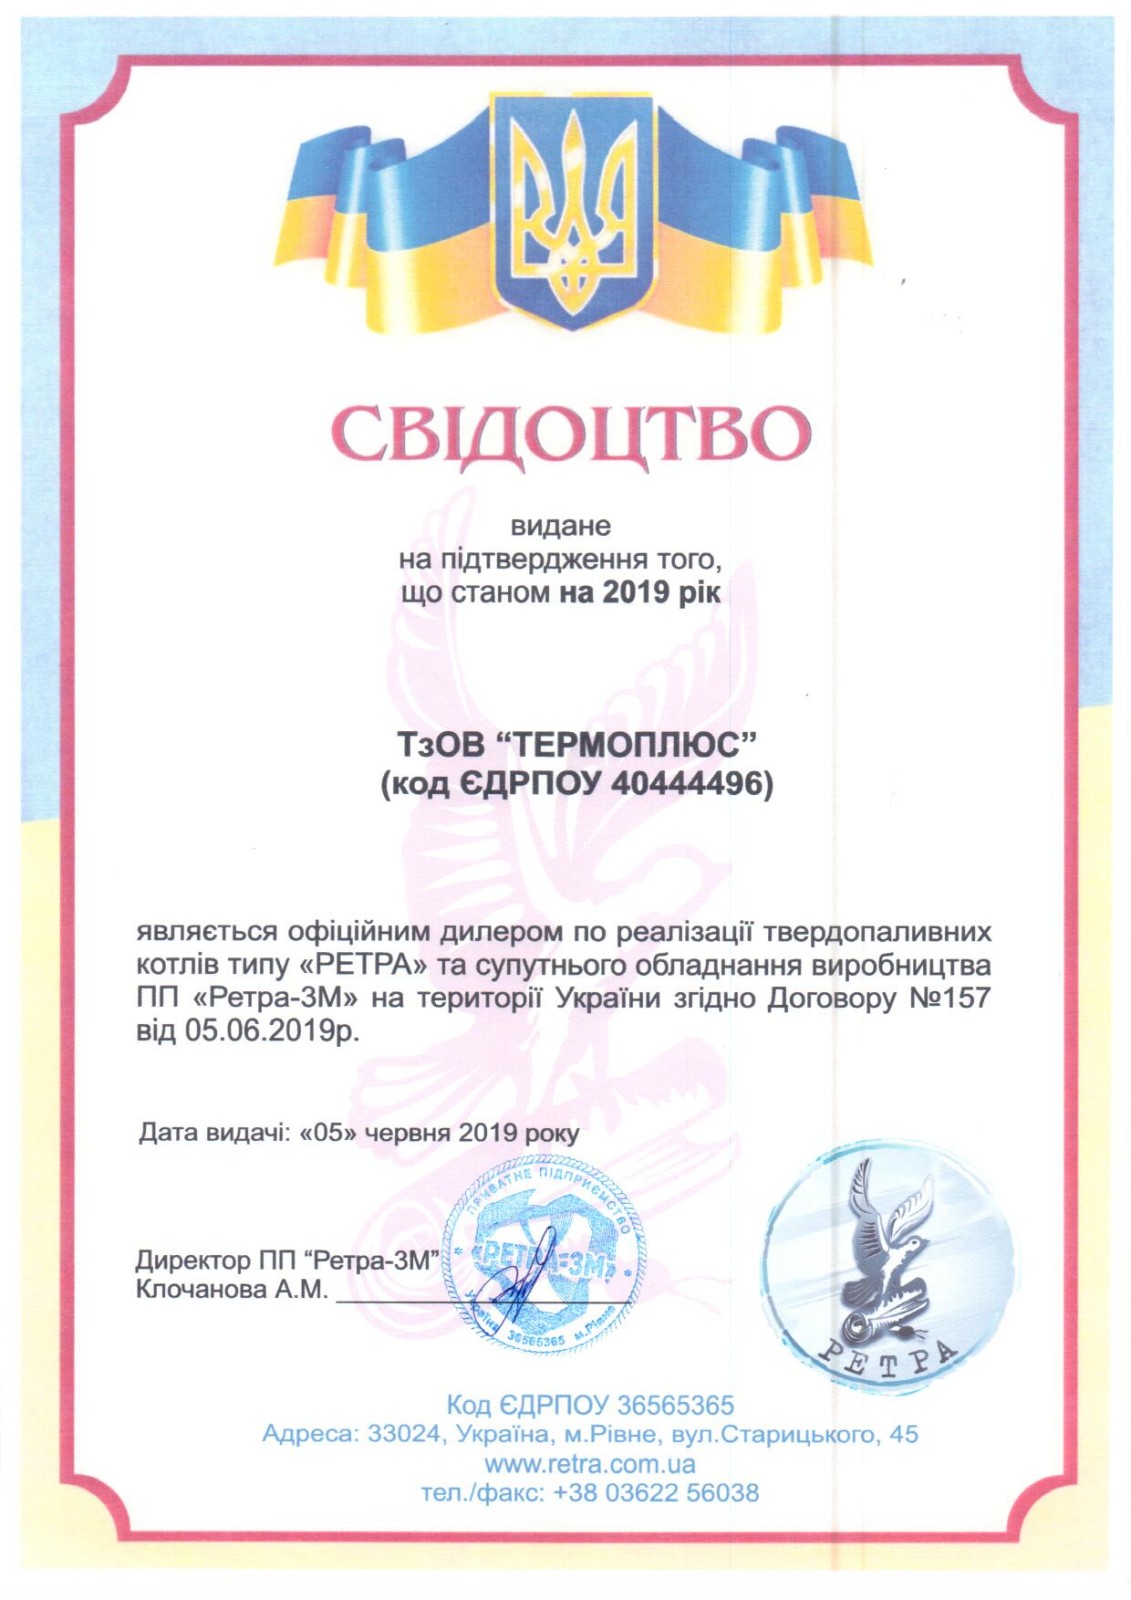 ТОВ ТЕРМОПЛЮС сертификат дилера Ретра